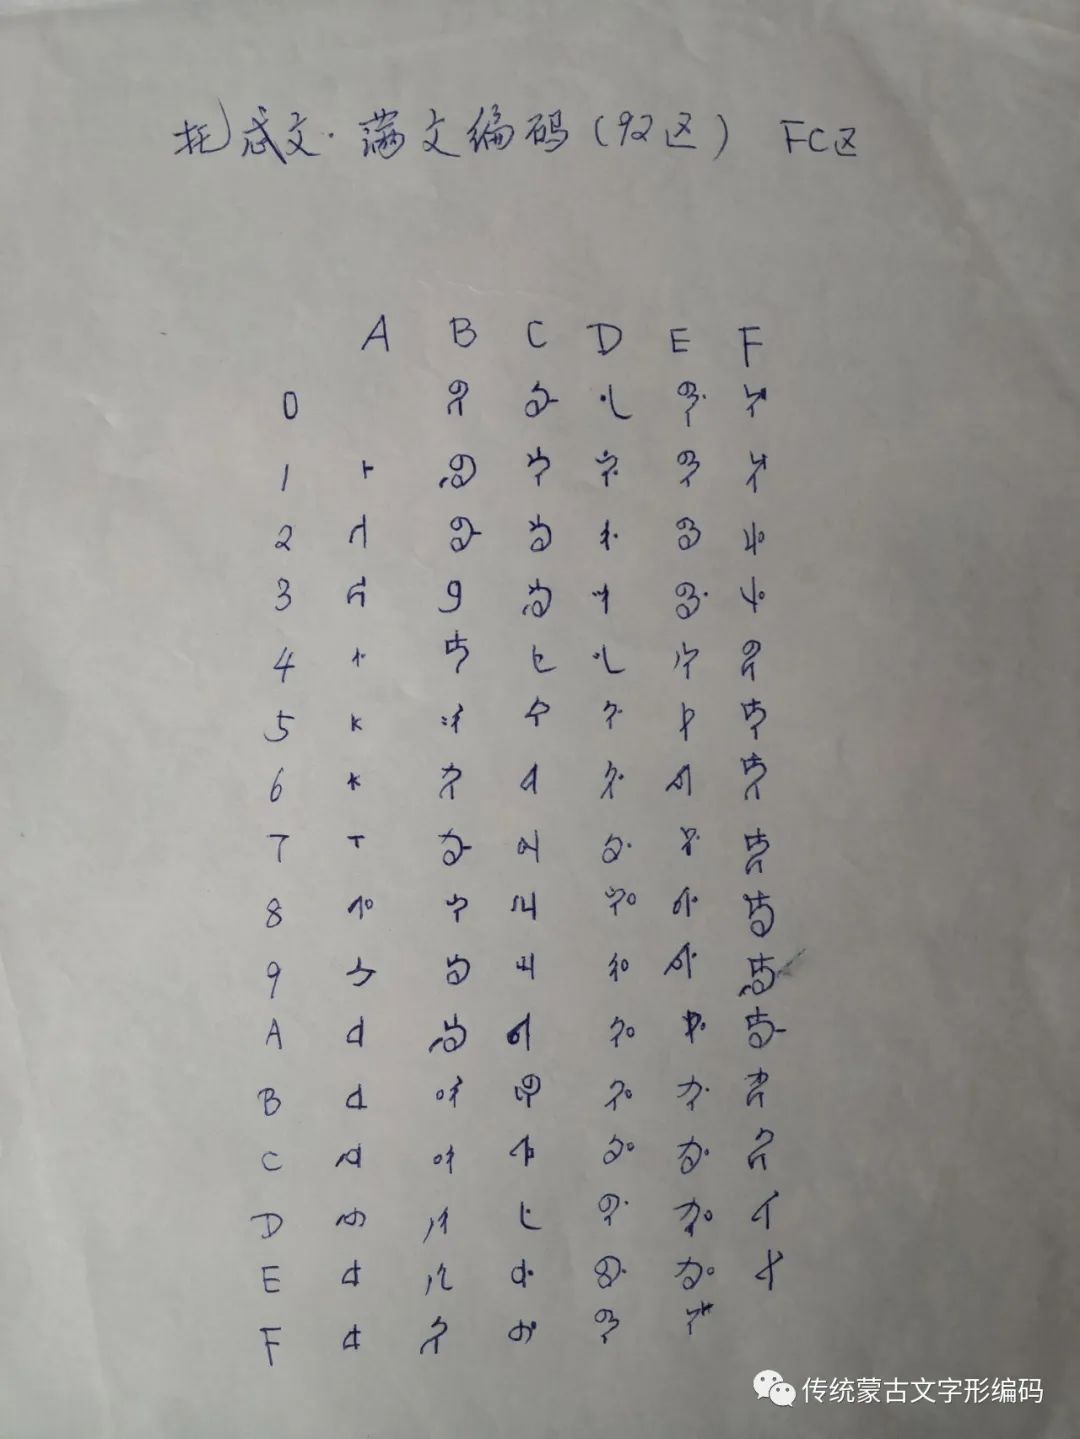 下面是当时旧编码研发过程中的痕迹:方正蒙古文旧编码是字形编码,全部